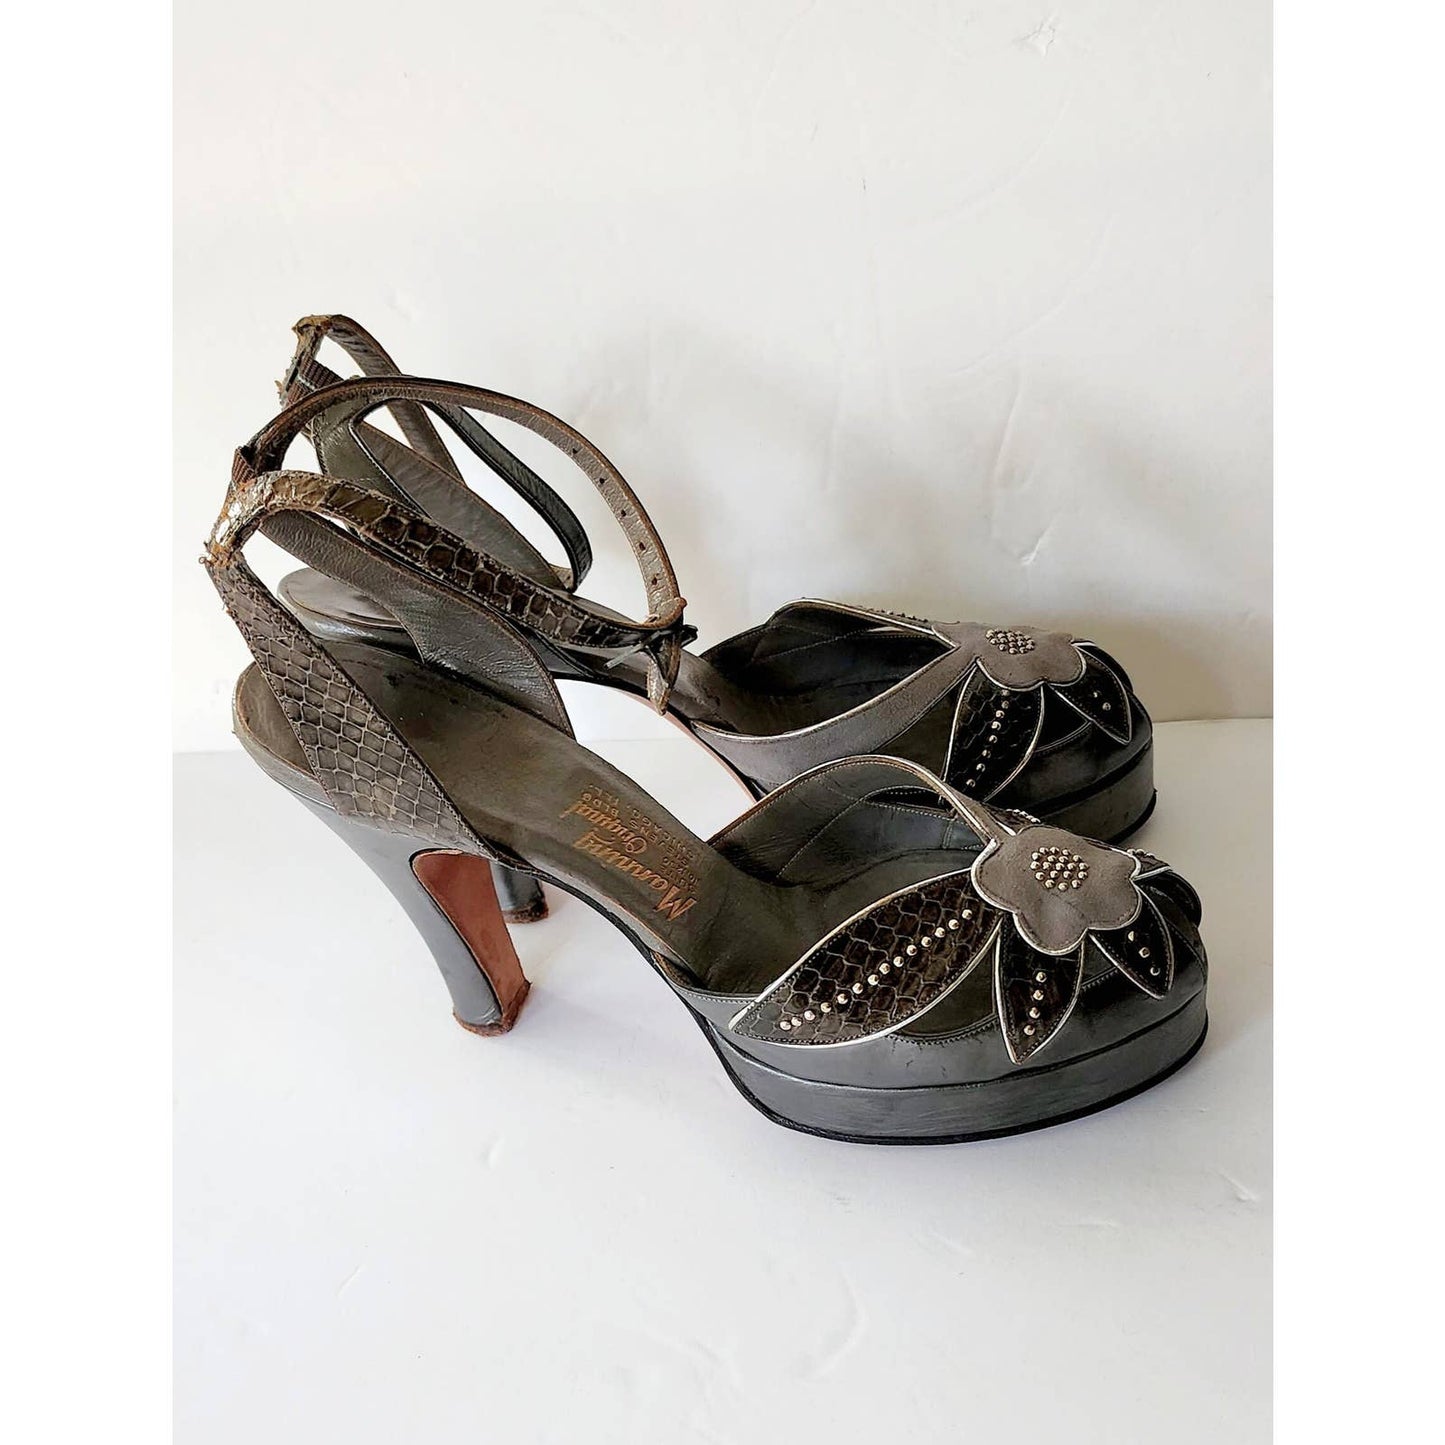 Vintage 40s High Heel Platform Shoes Maryjanes Gray Silver Floral Manning Original